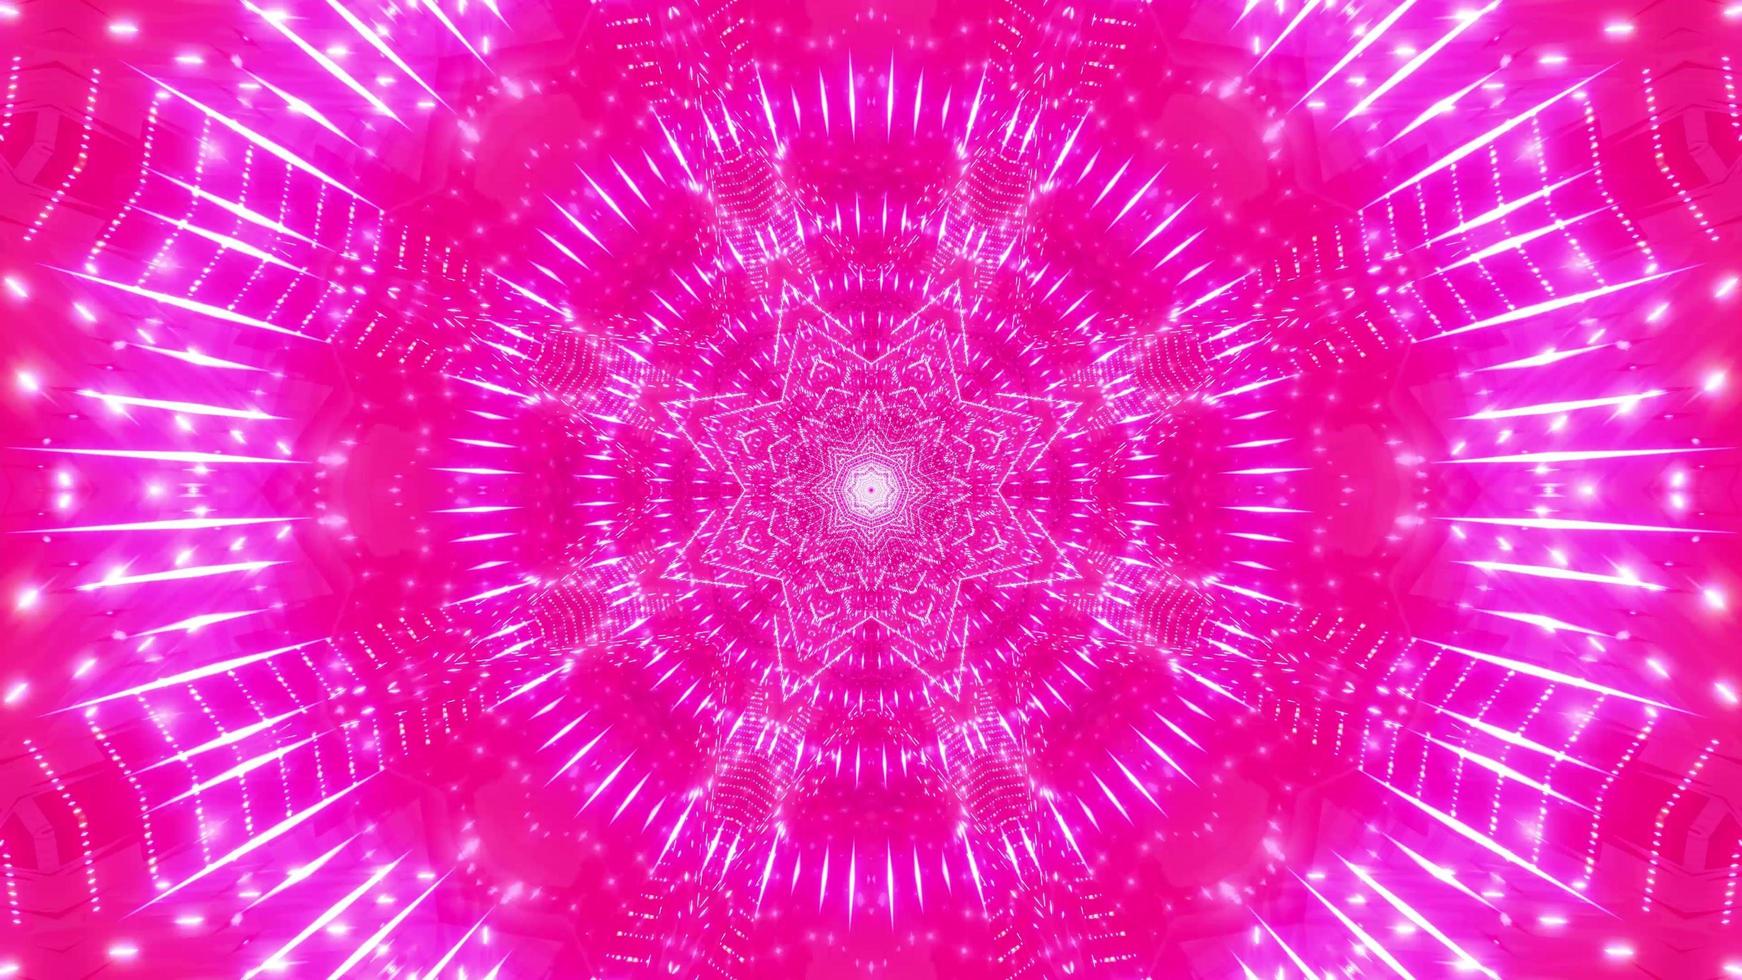 paars, rood, roze en wit licht en vormen caleidoscoop 3d illustratie voor achtergrond of behang foto